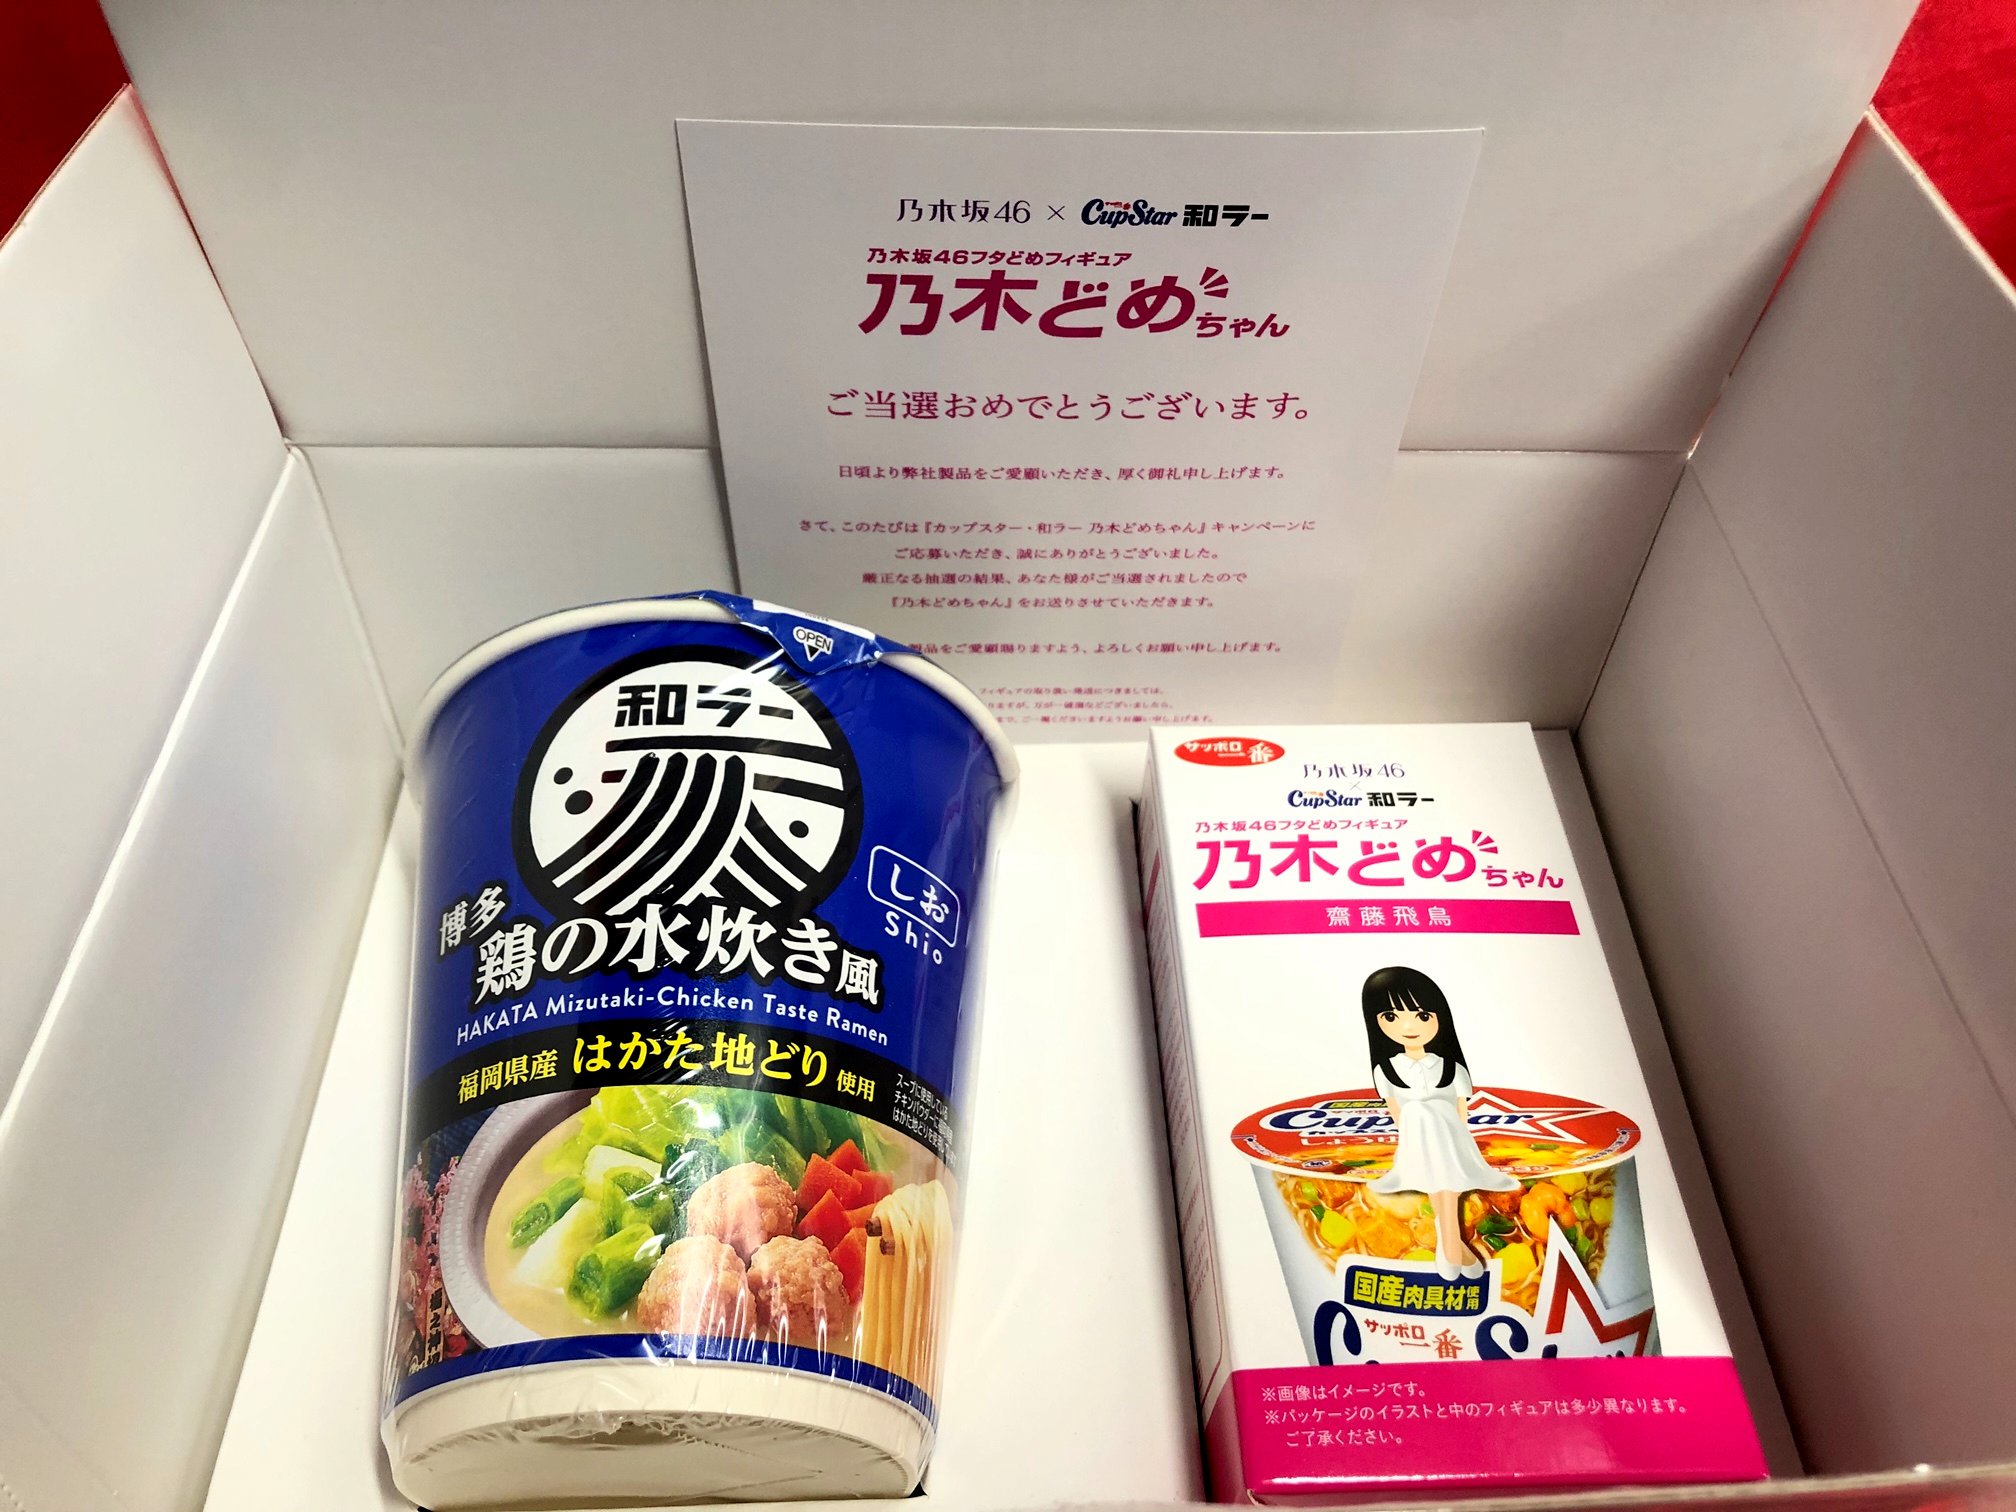 サンヨー食品 乃木坂46 × カップスター和ラー 齋藤飛鳥 乃木どめちゃん